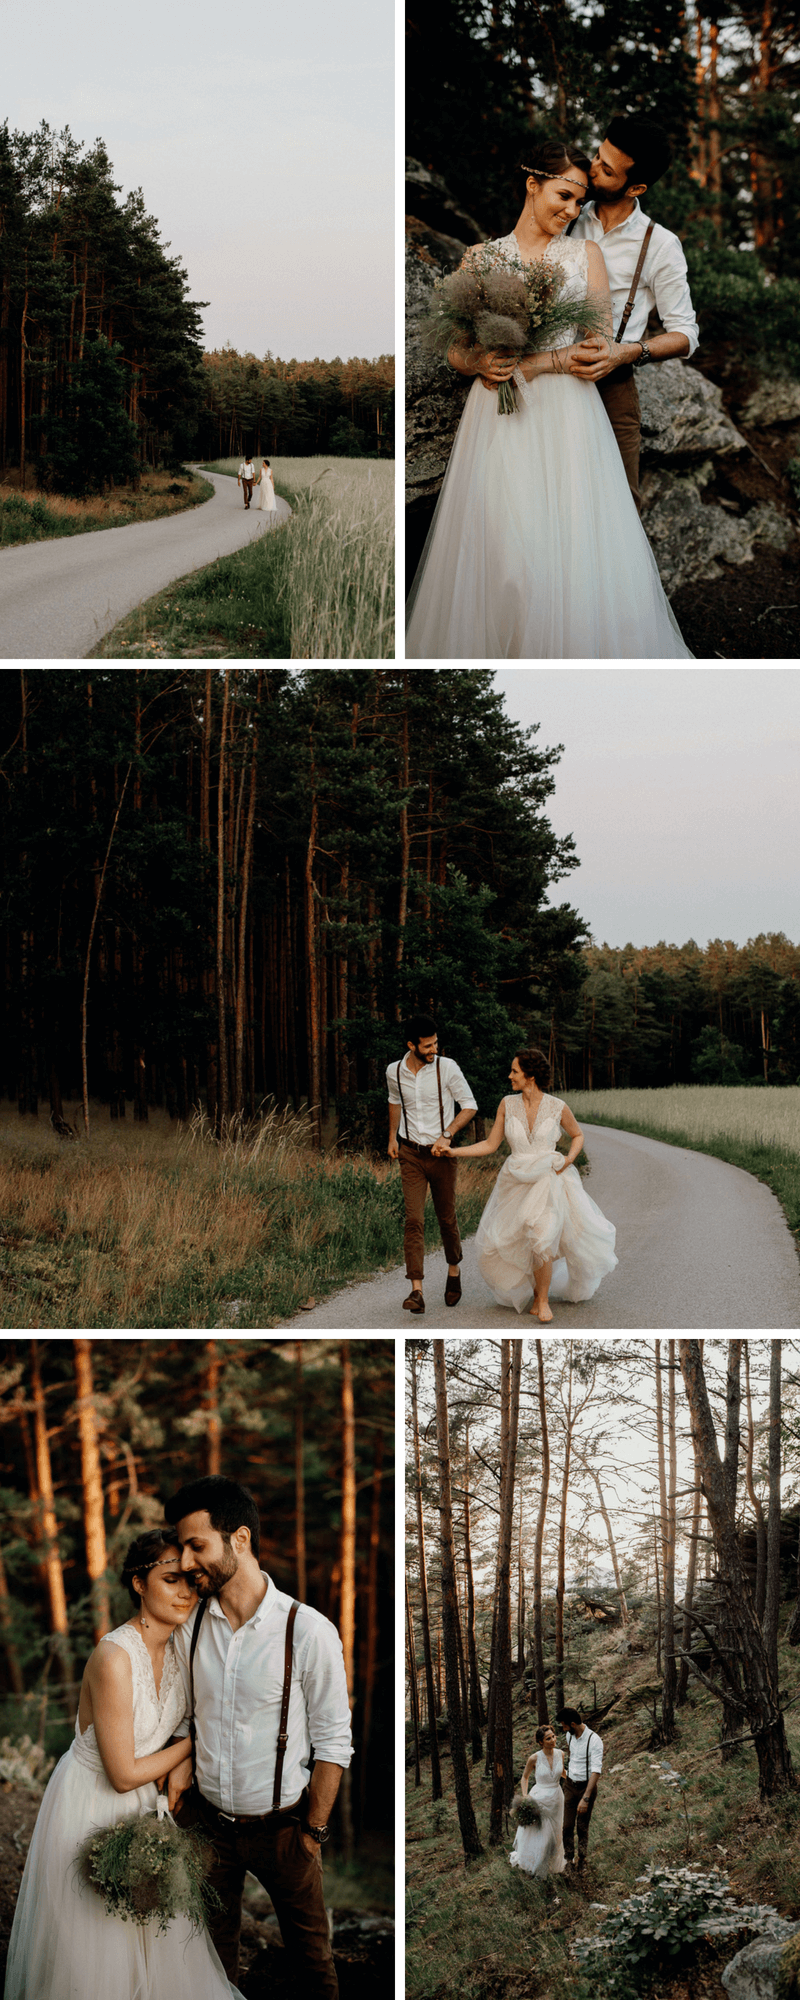 Waldhochzeit, Boho Hochzeit, Hochzeit im Wald